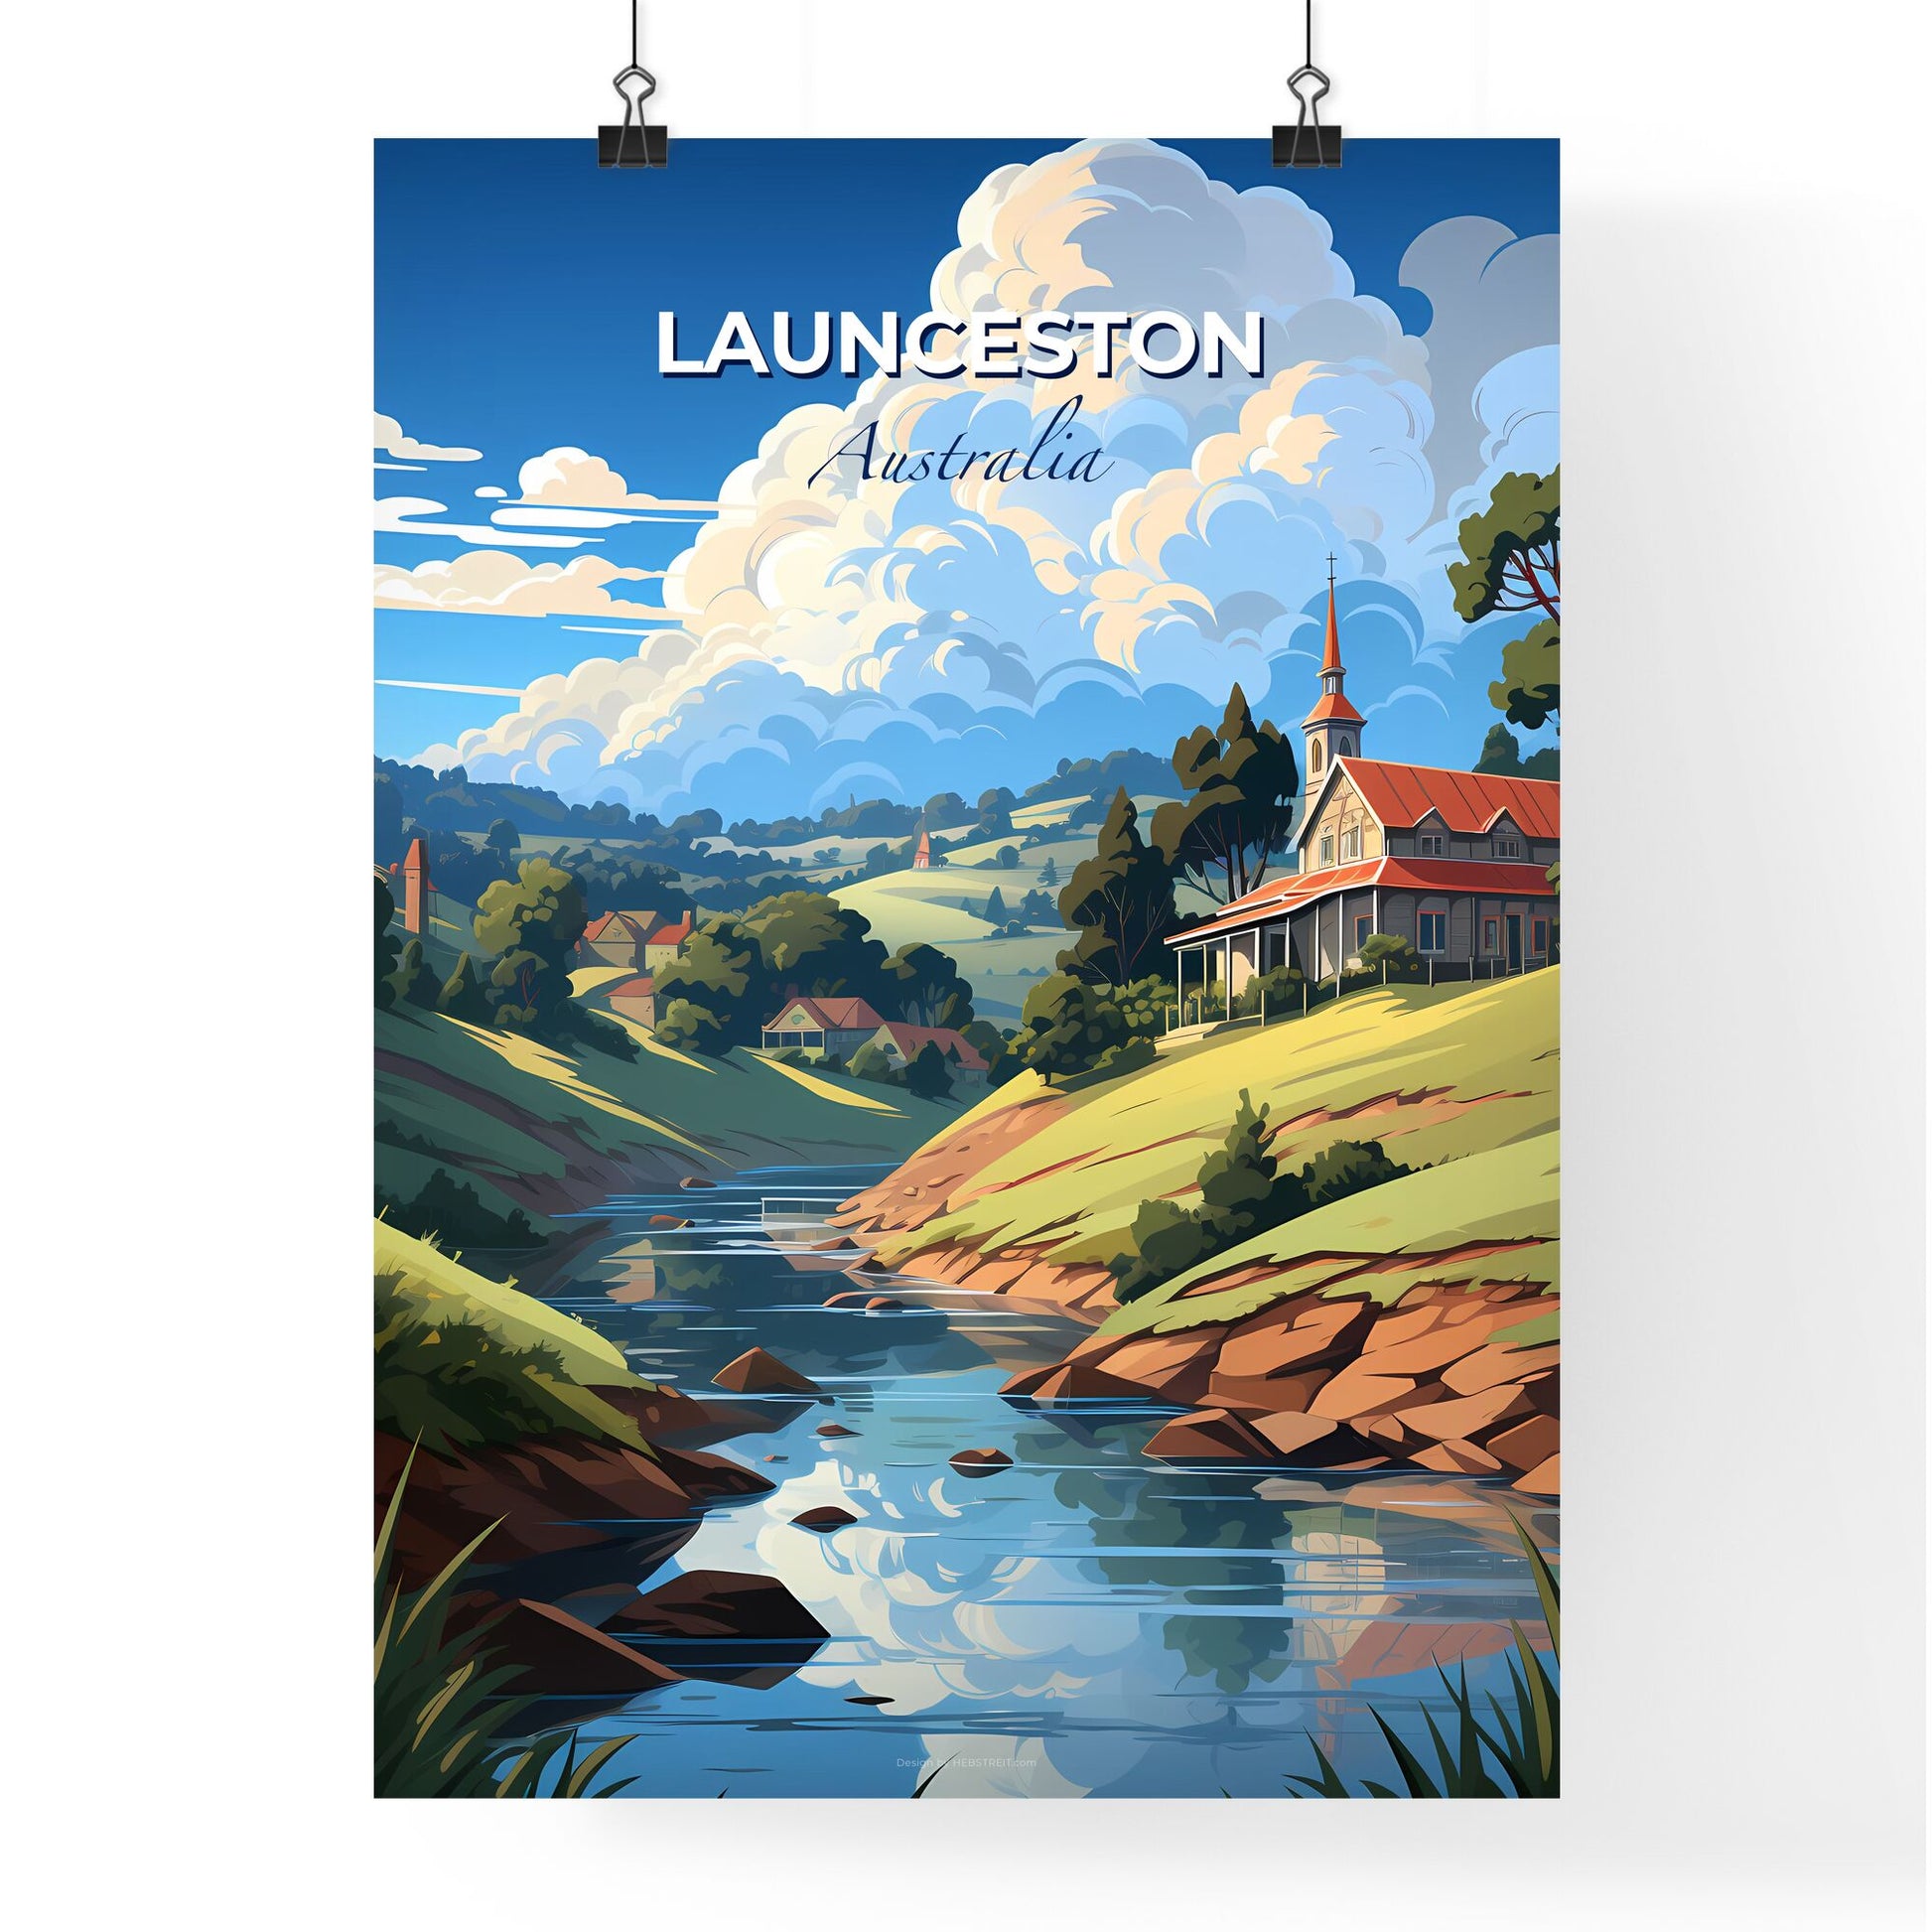 Launceston Australia Skyline Painting: Vibrant Houses, Trees, River Valley Landscape Art Default Title